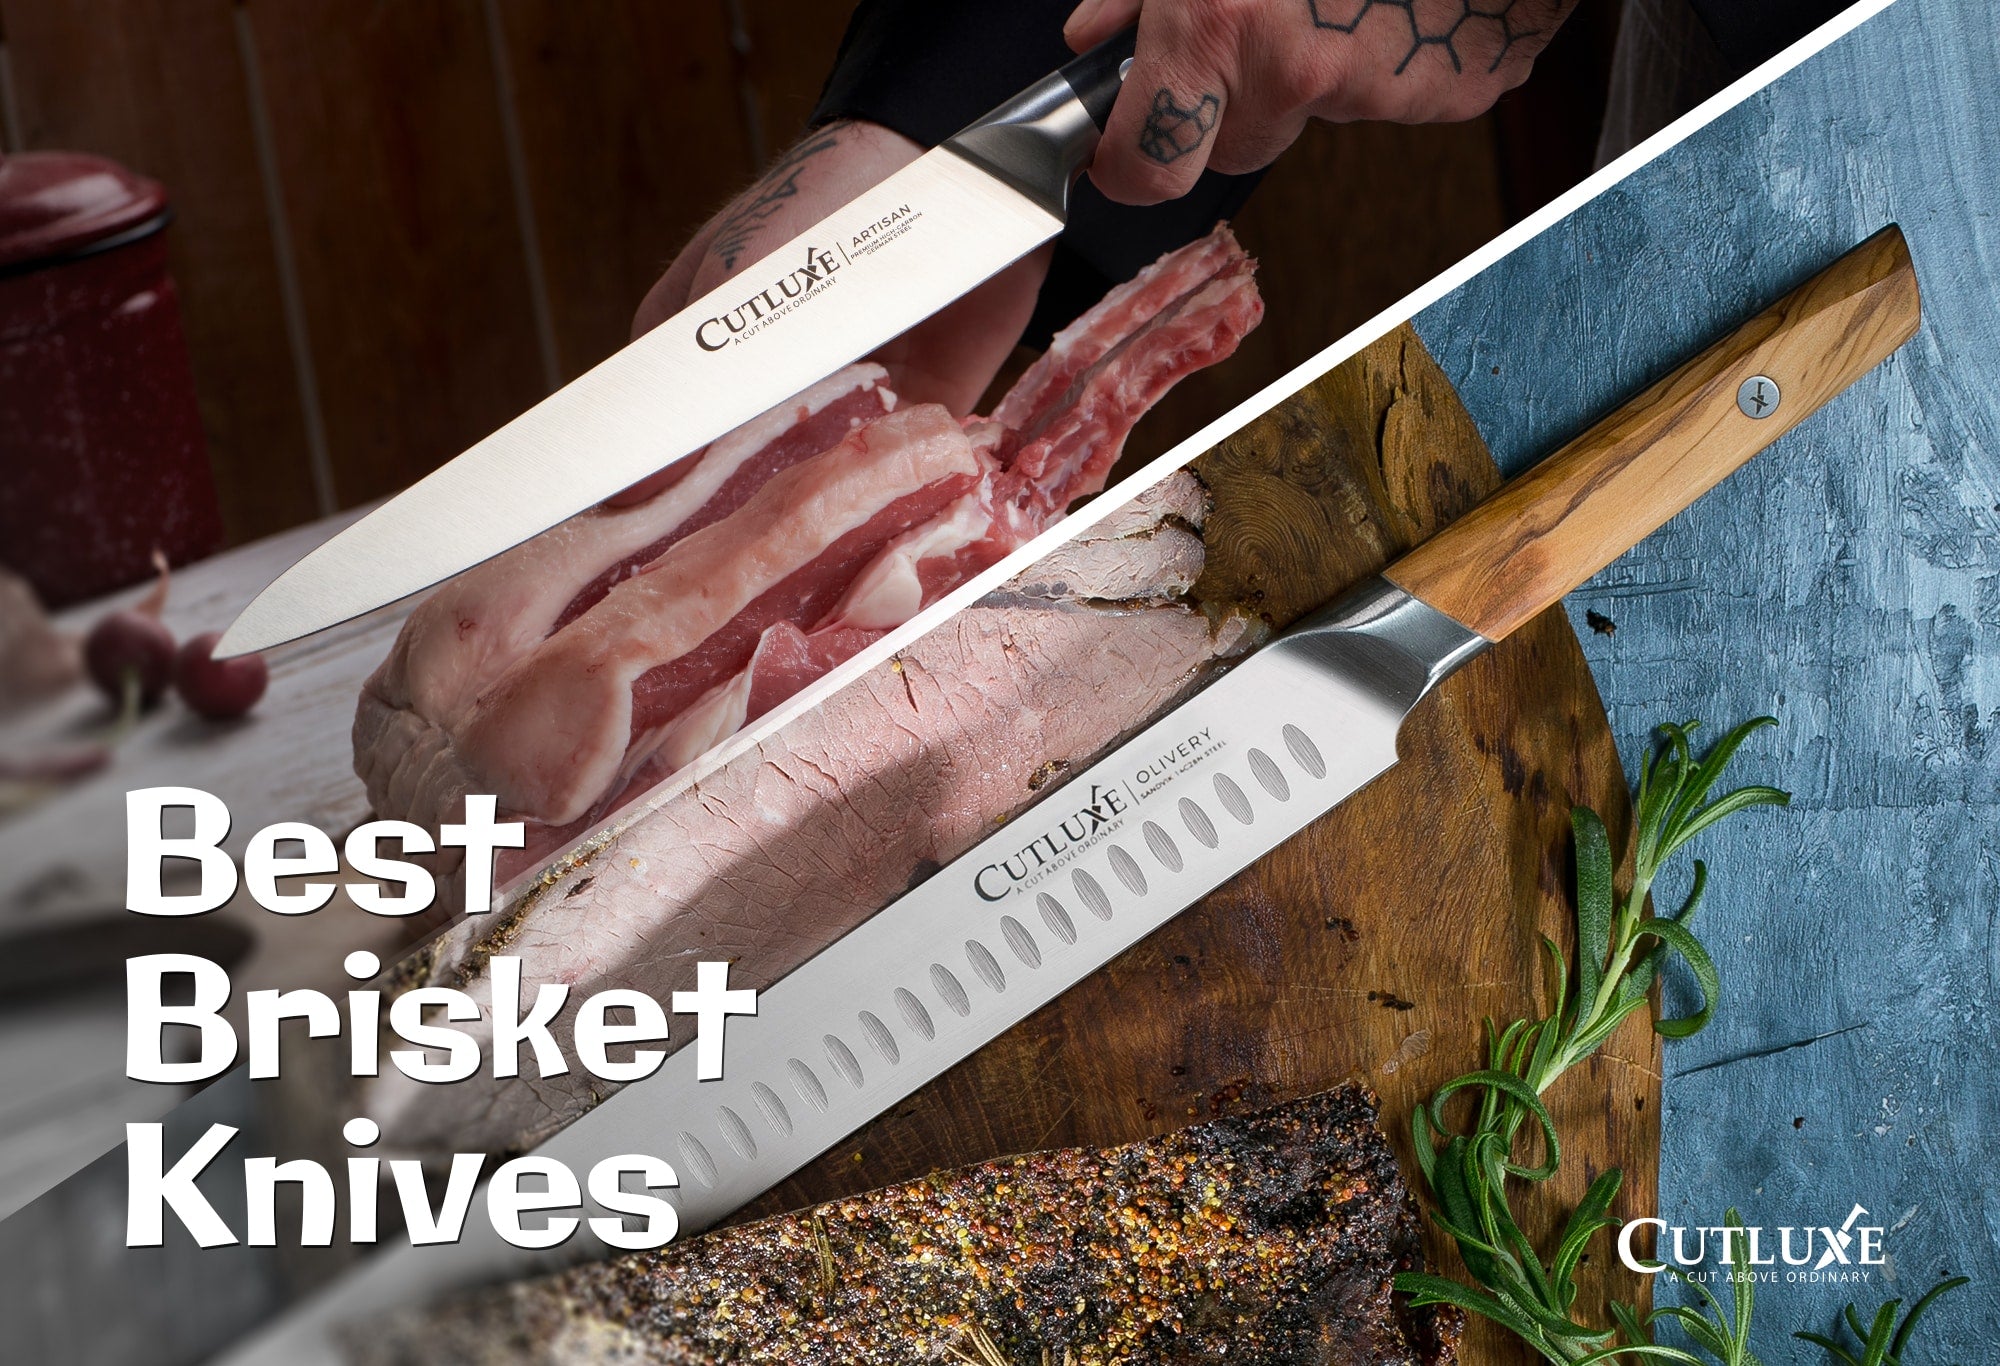 10 Best Brisket Knives Review - The Jerusalem Post